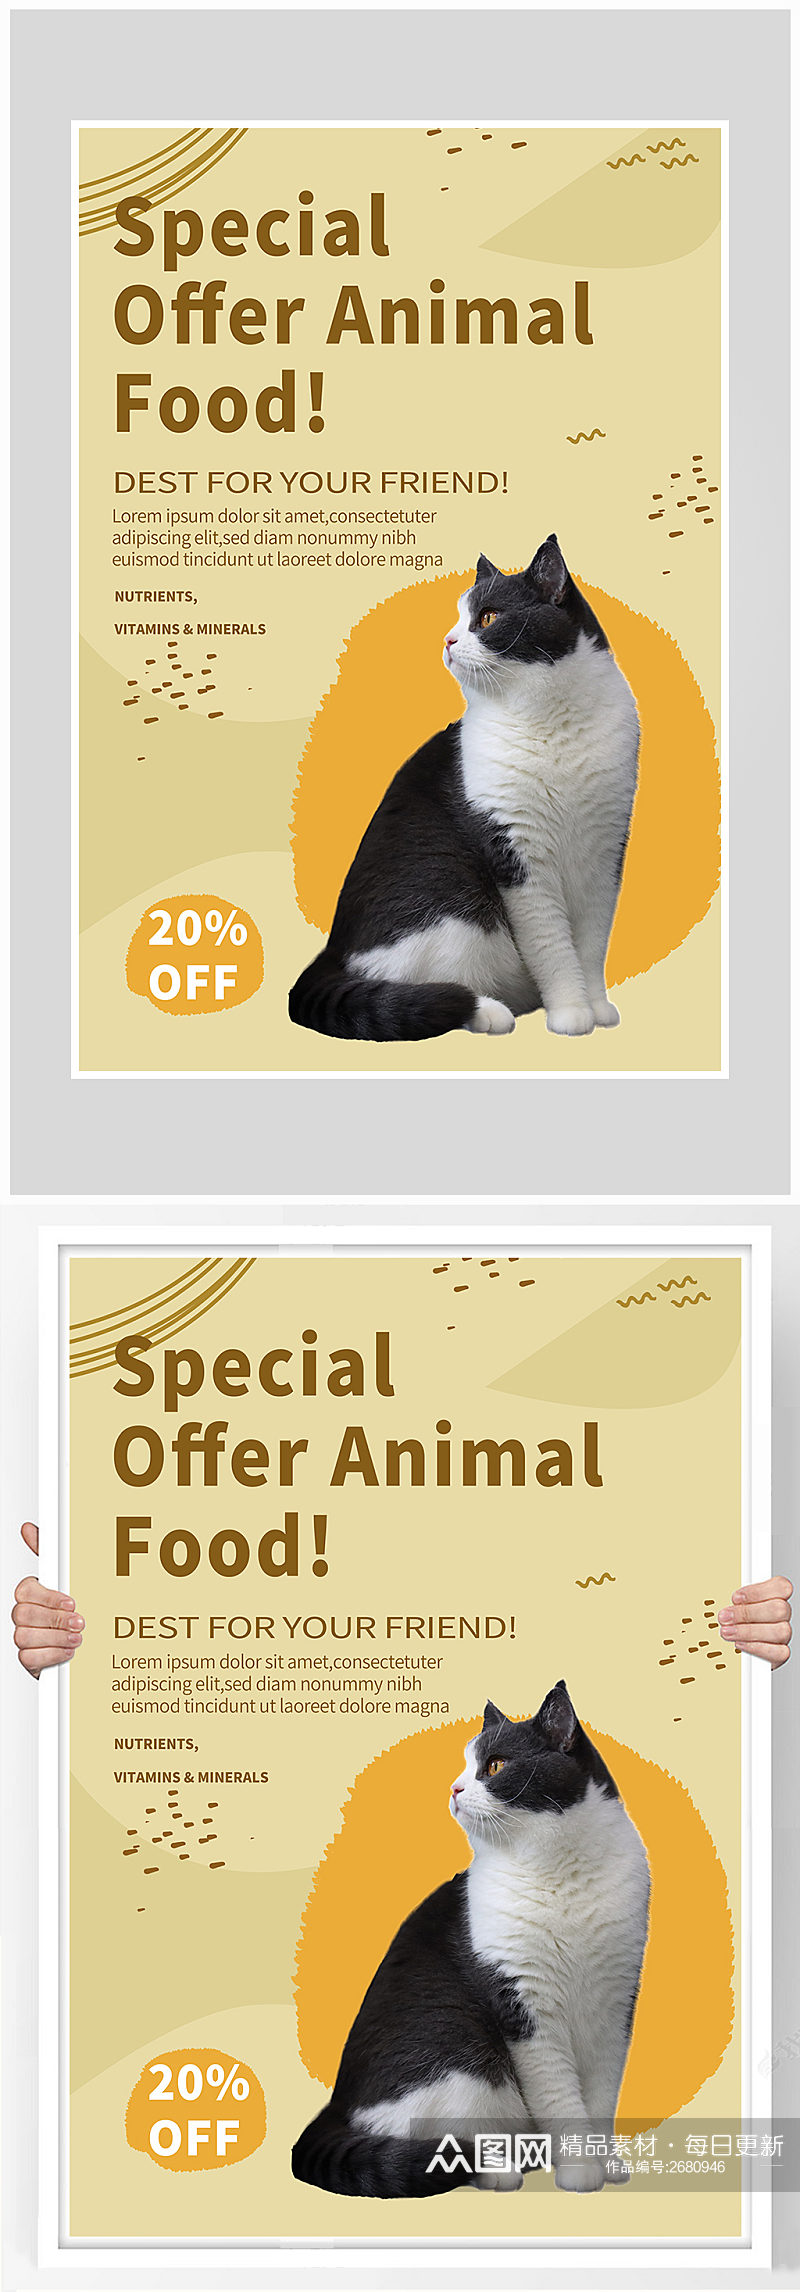 创意小猫小狗宠物店海报设计素材